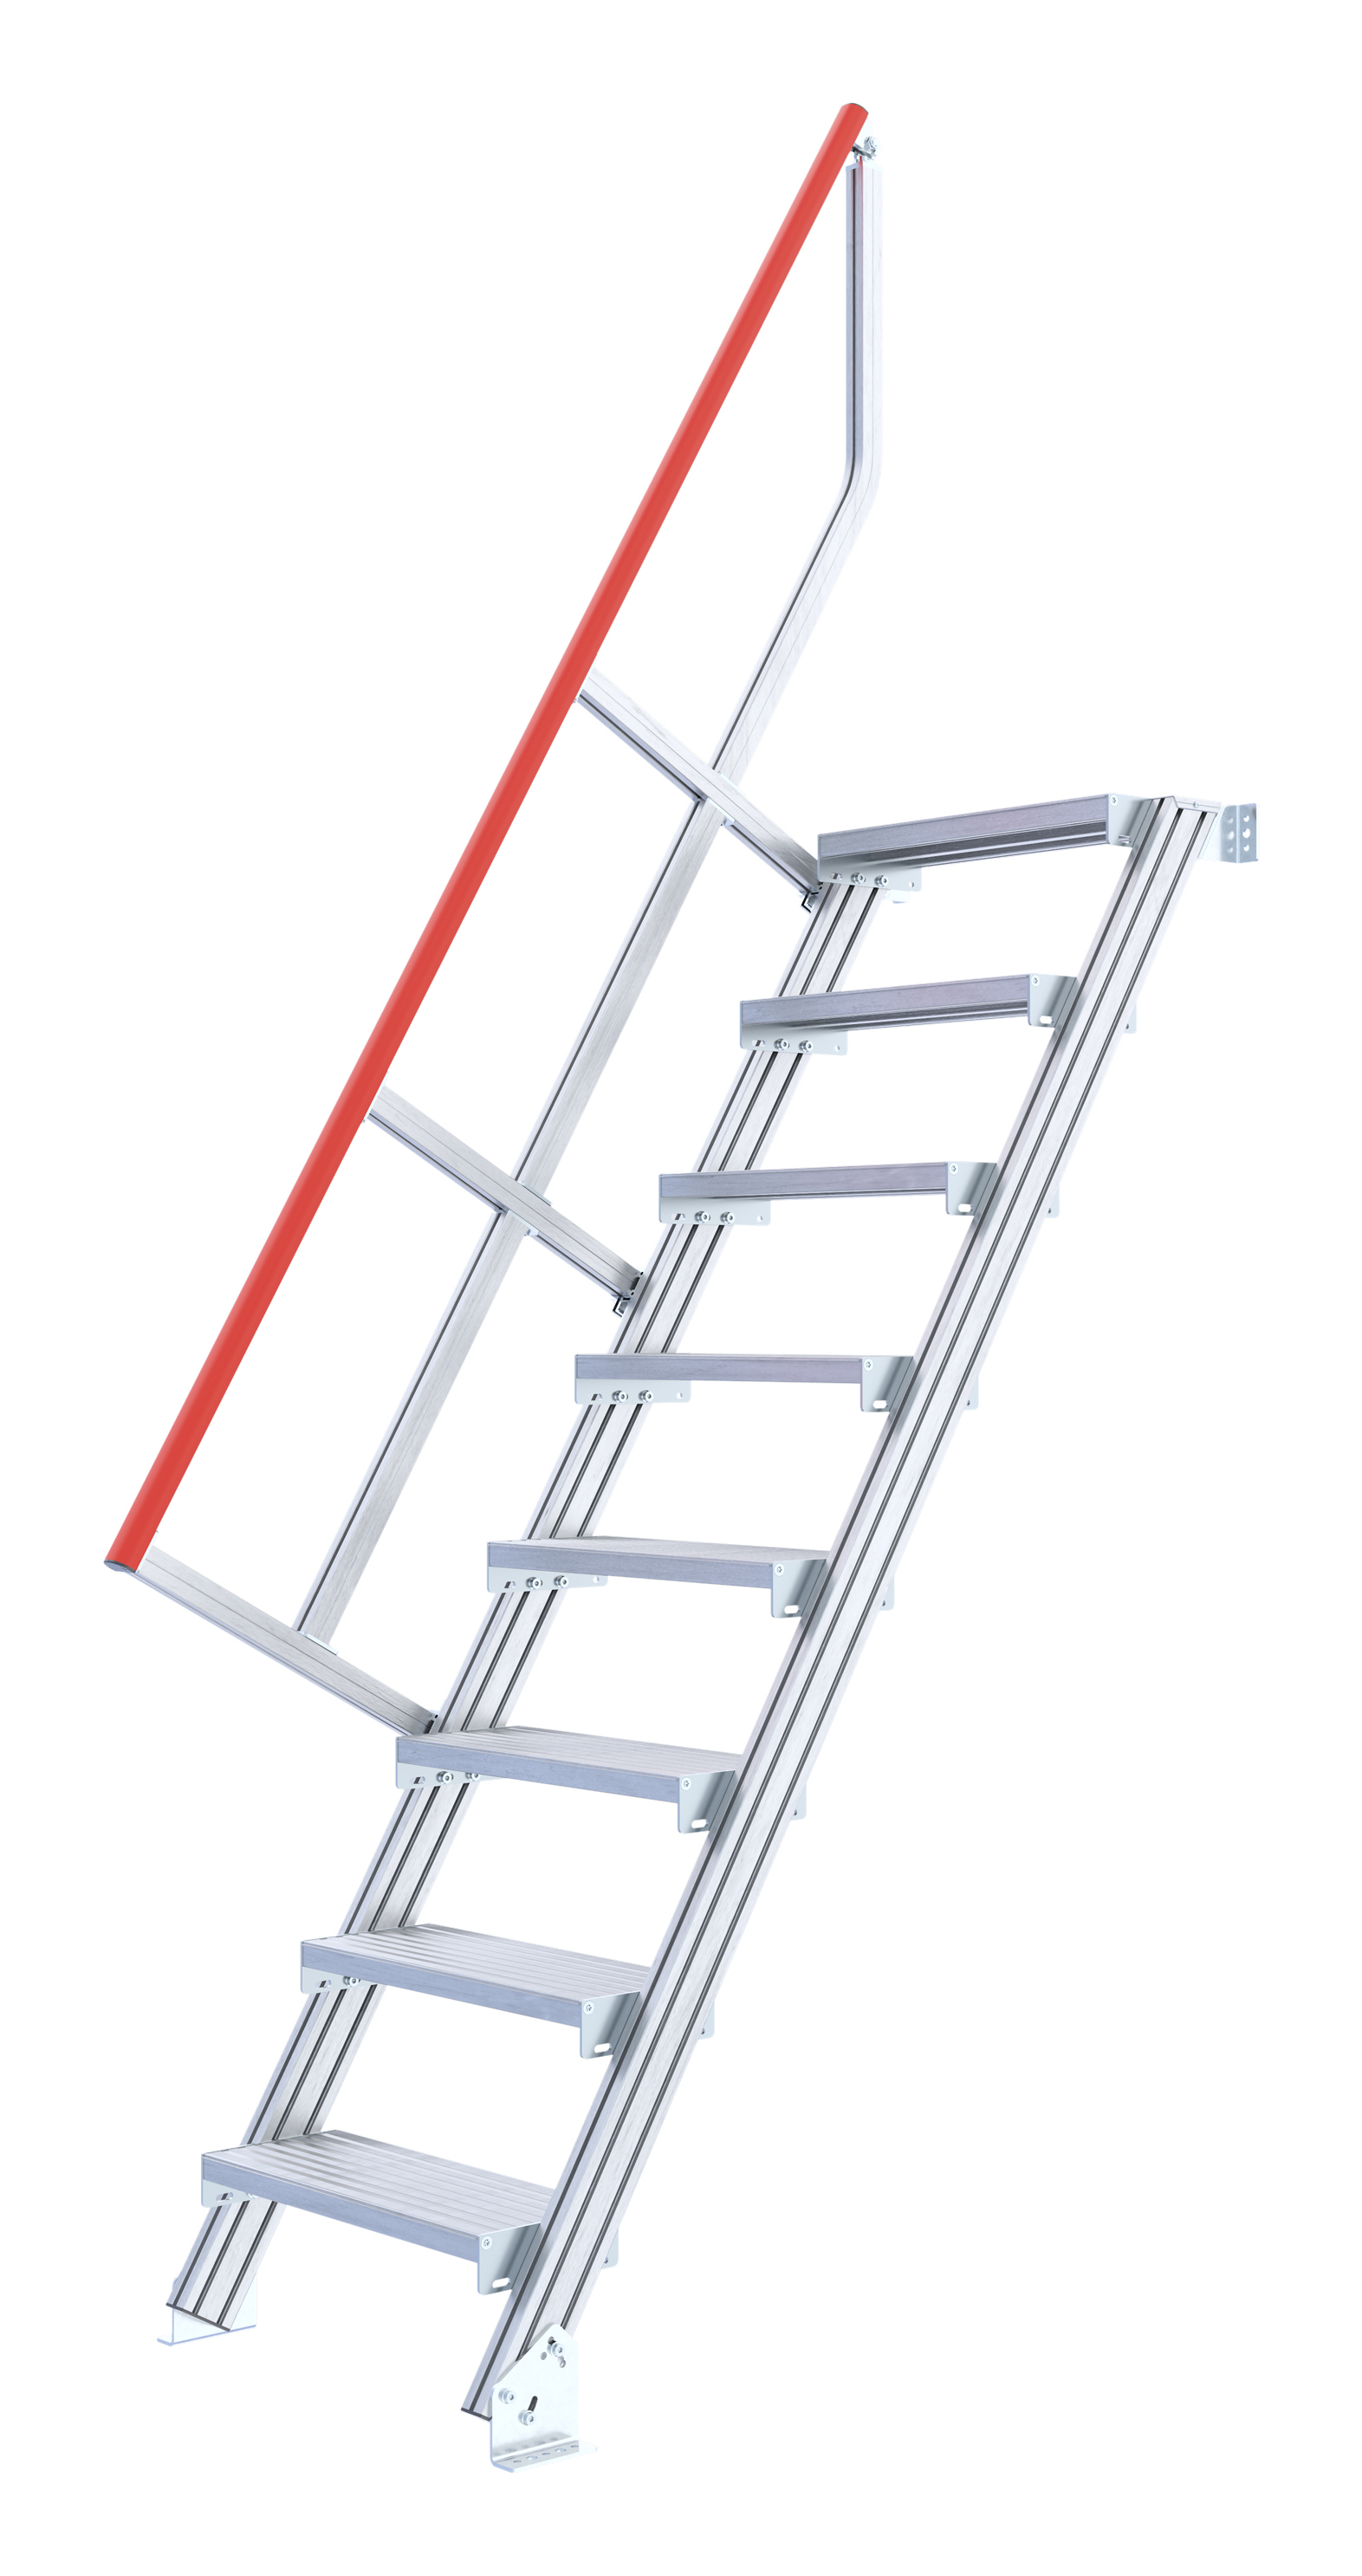 Treppenleiter stationär ohne Podest, Treppenneigung 60°, Stufenbreite 1000 mm